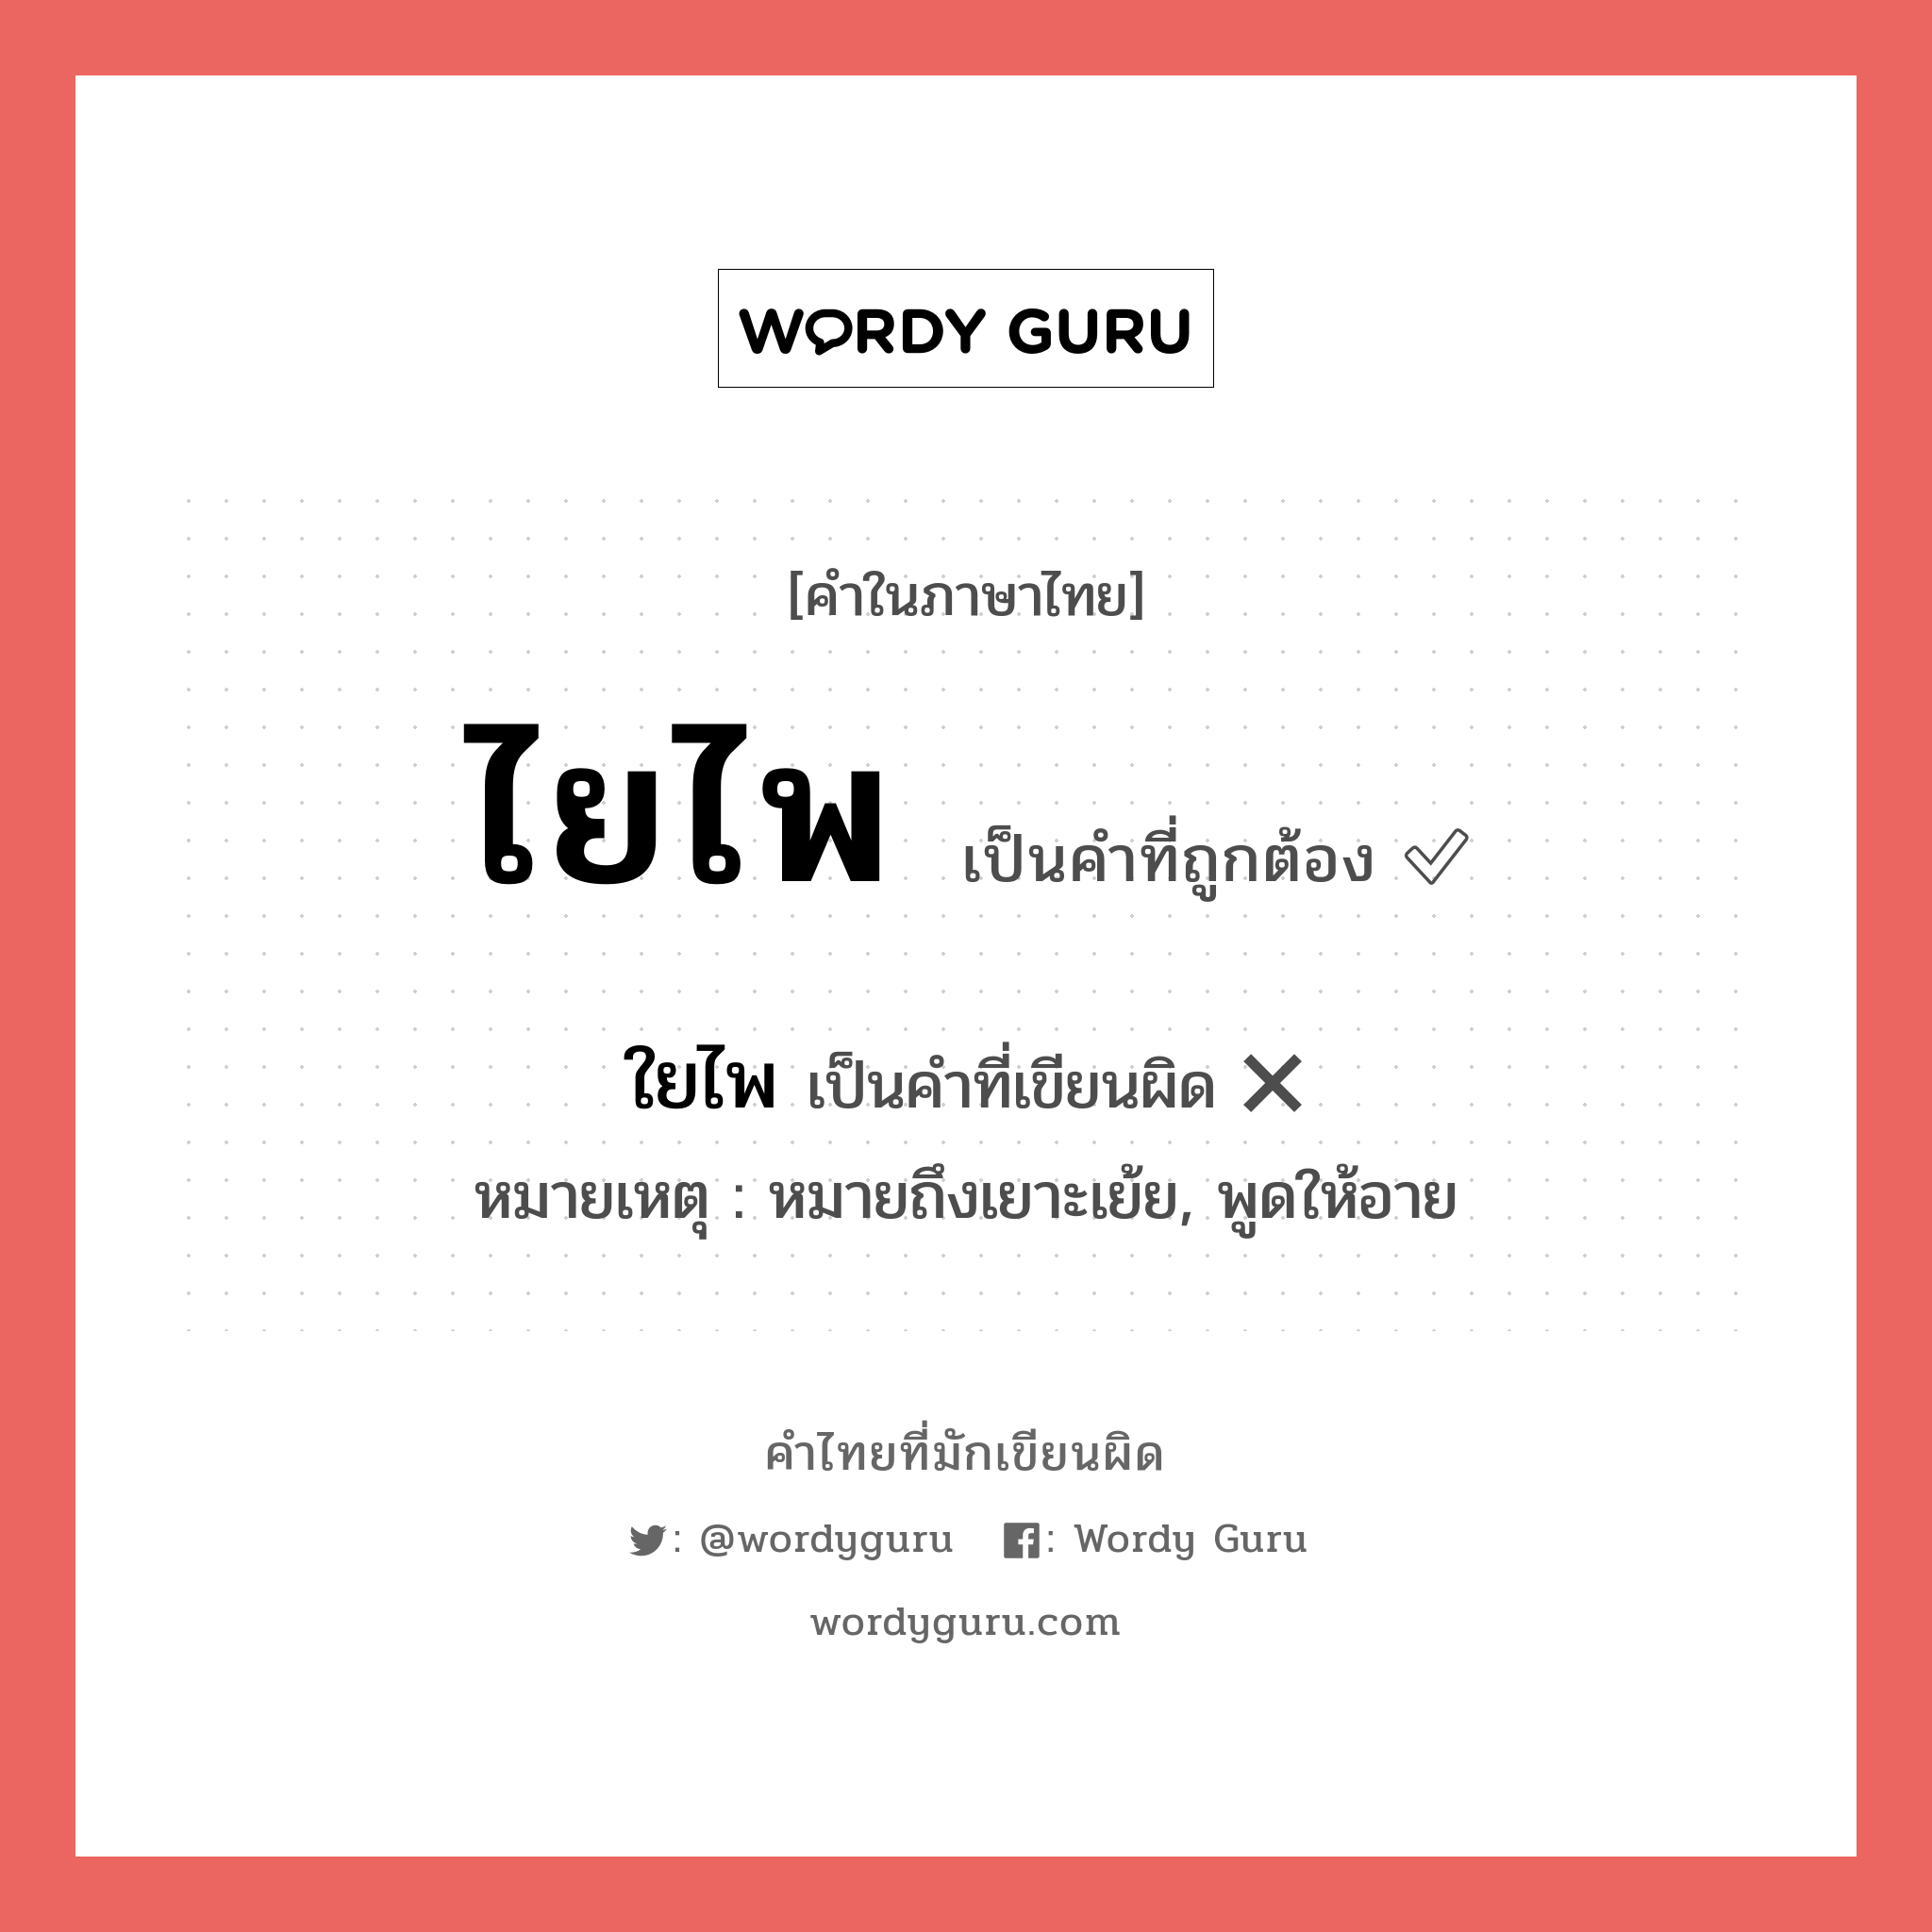 ไยไพ หรือ ใยไพ คำไหนเขียนถูก?, คำในภาษาไทยที่มักเขียนผิด ไยไพ คำที่ผิด ❌ ใยไพ หมายเหตุ หมายถึงเยาะเย้ย, พูดให้อาย